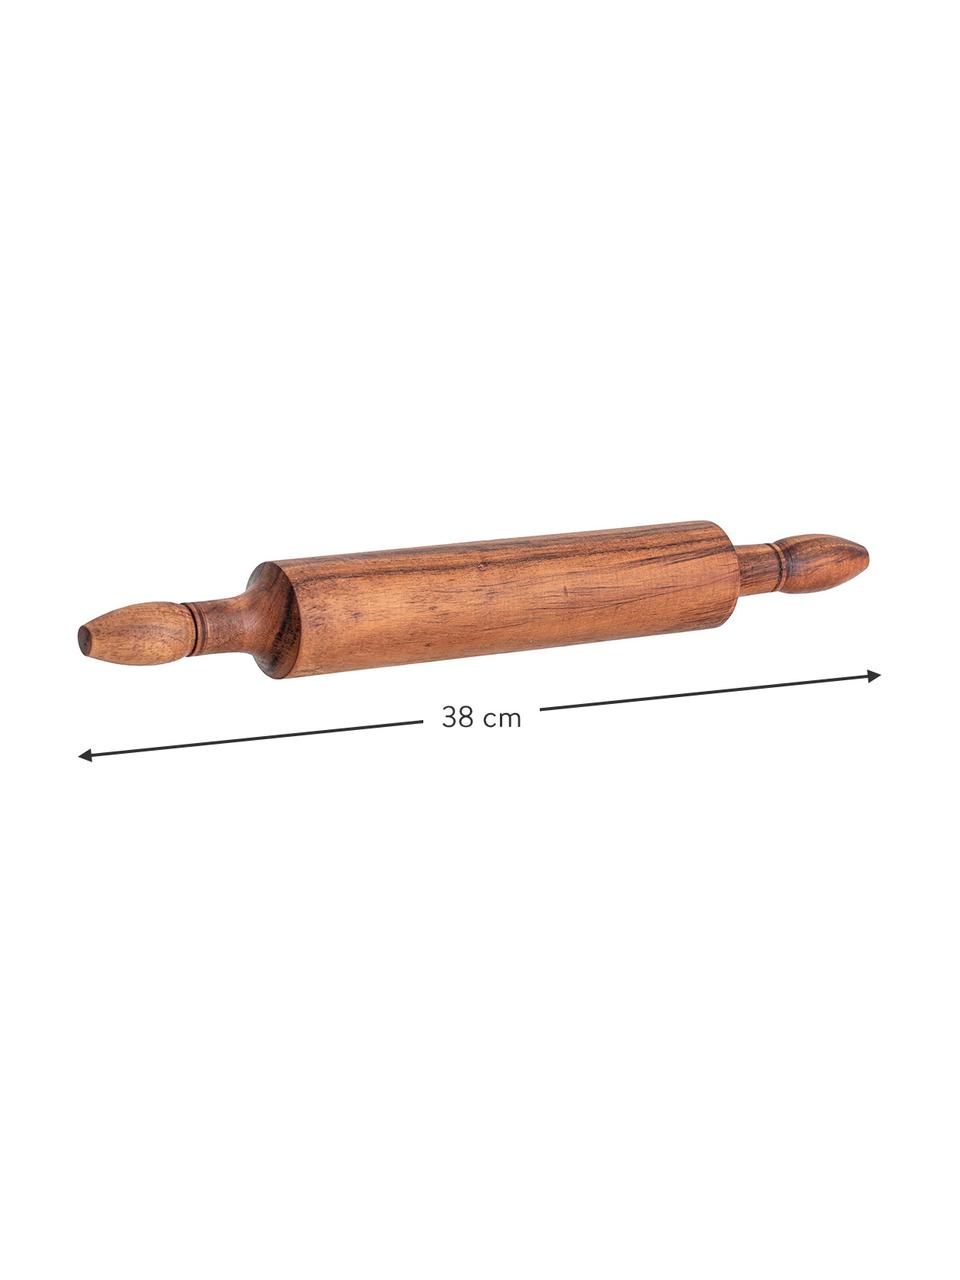 Váleček z akátového dřeva Alcott, Akátové dřevo, Akátové dřevo, D 38 cm